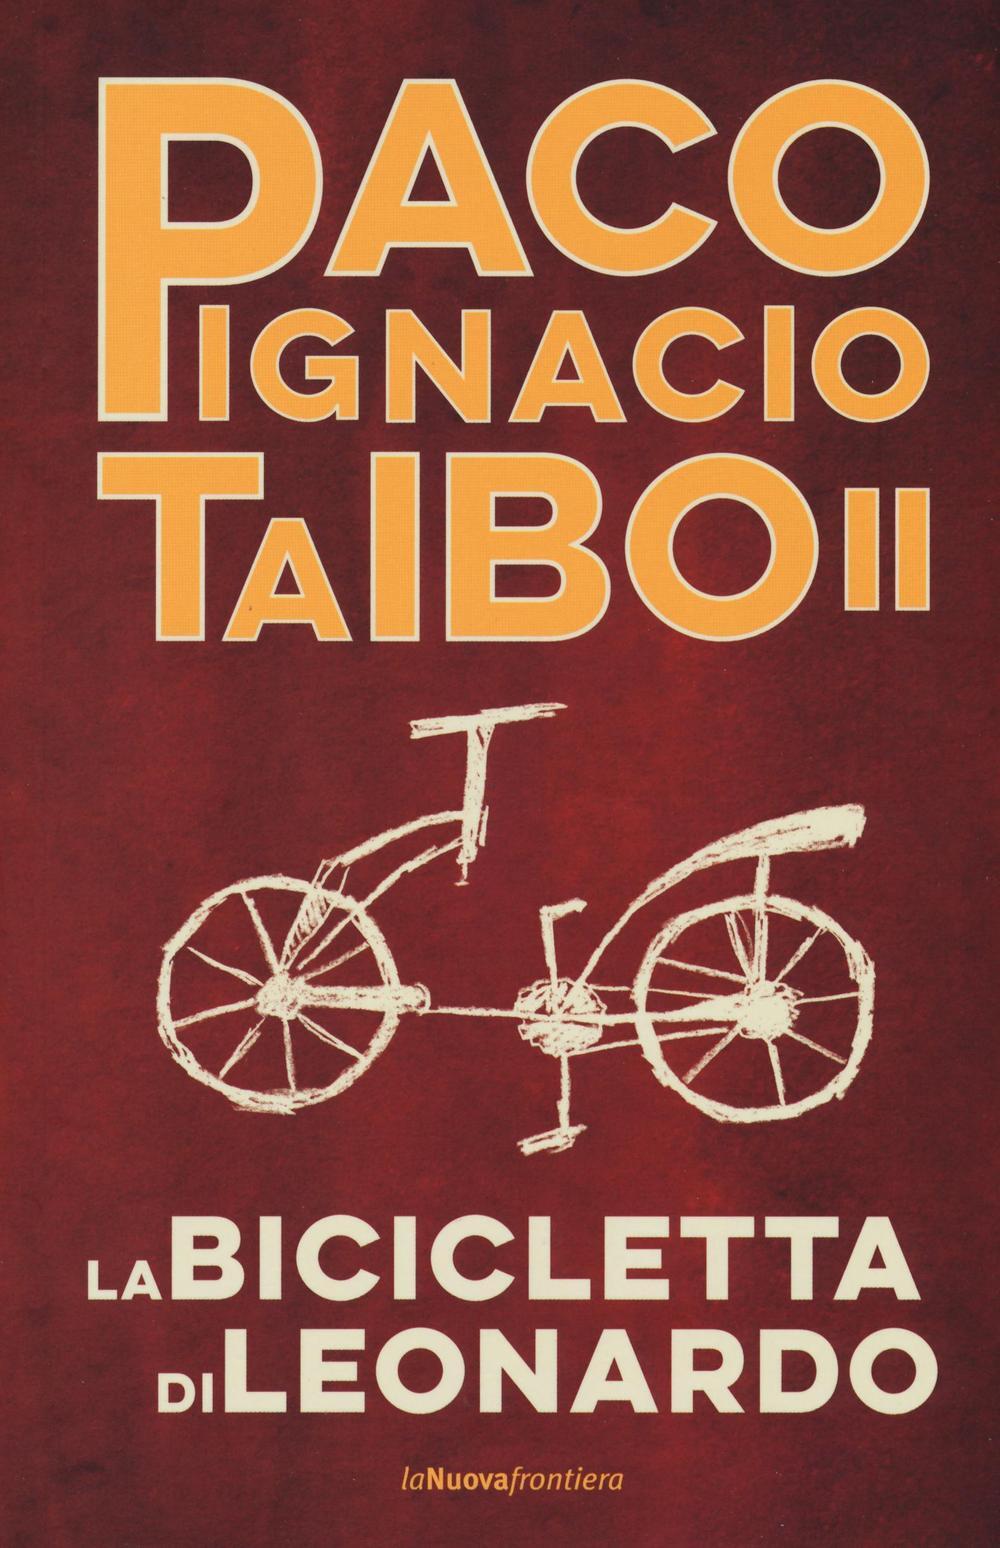 la bicicletta di leonardo paco ignacio taibo ii